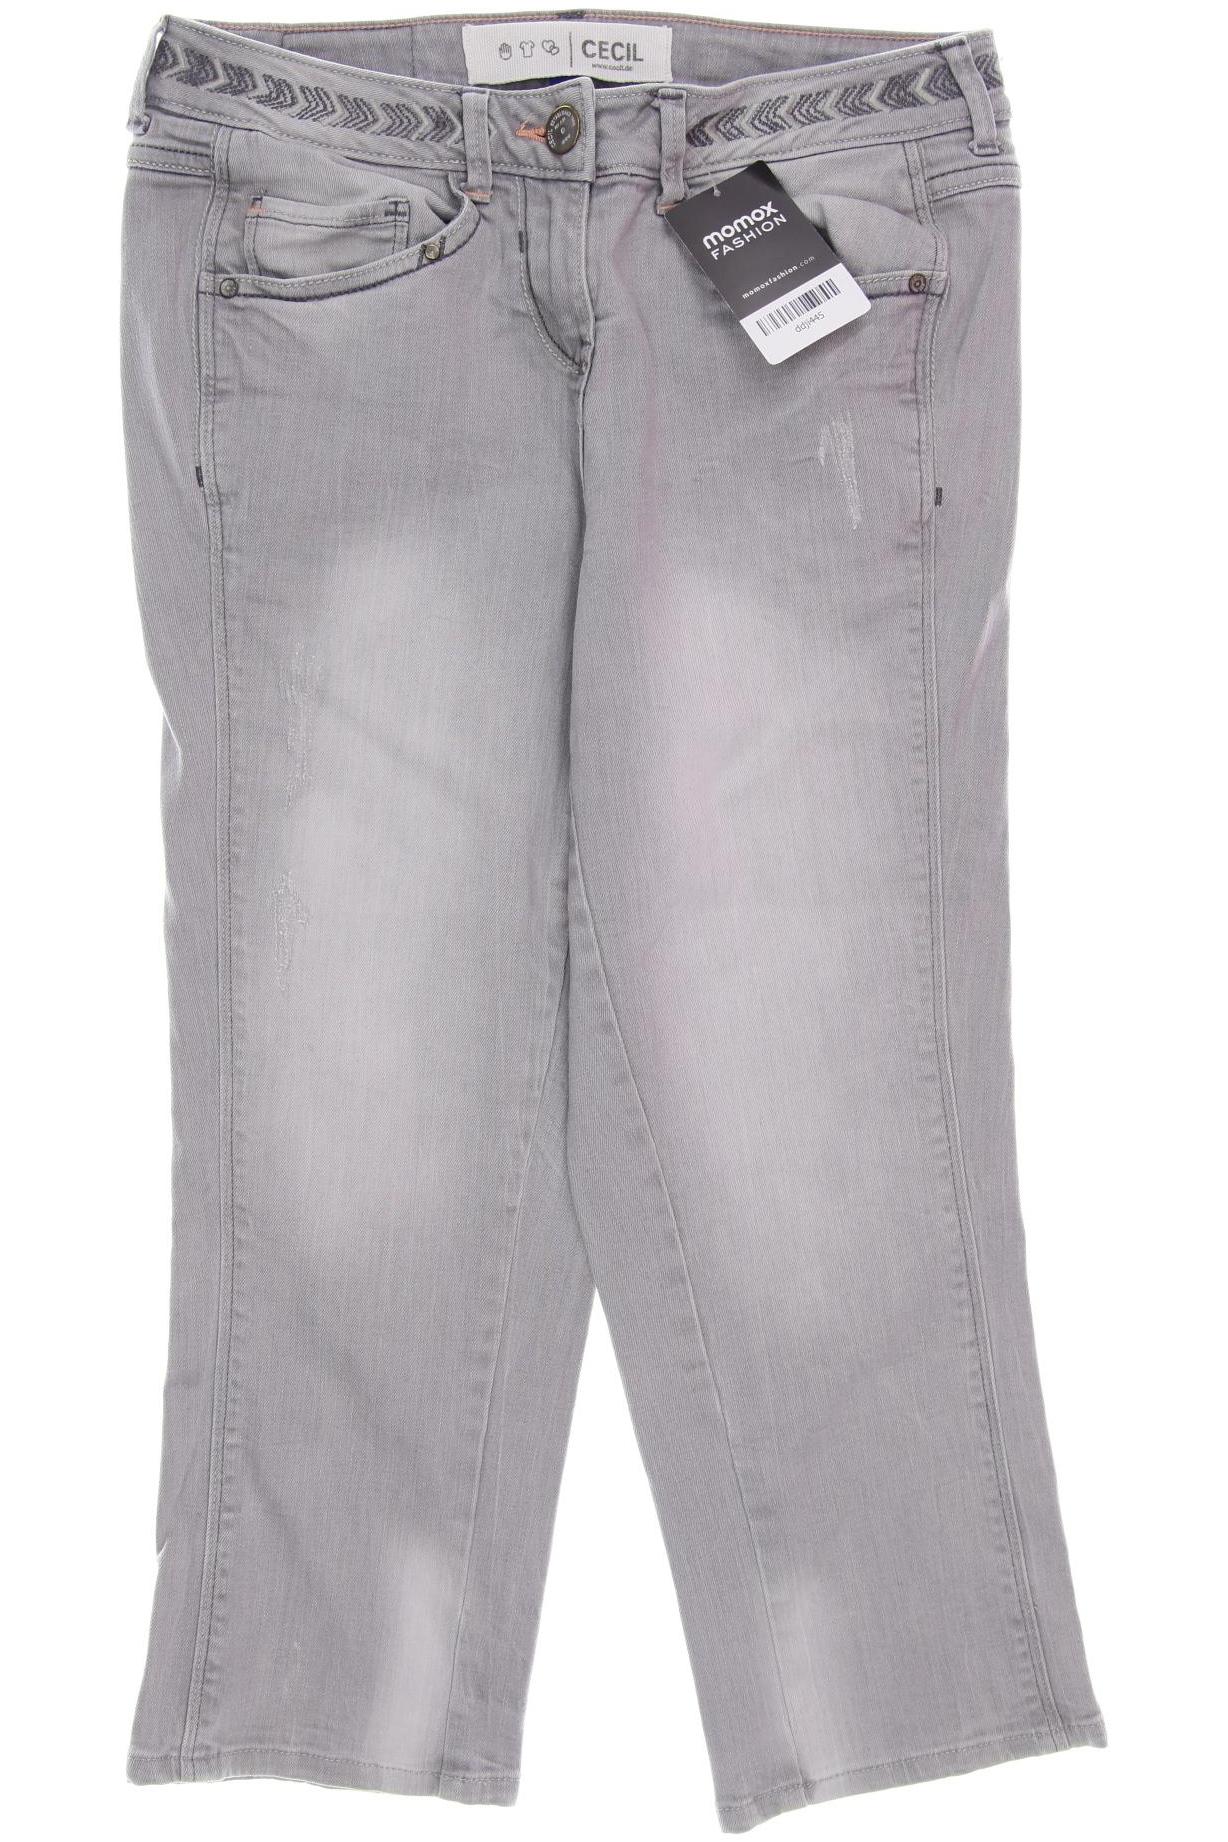 Cecil Damen Jeans, grau, Gr. 38 von cecil